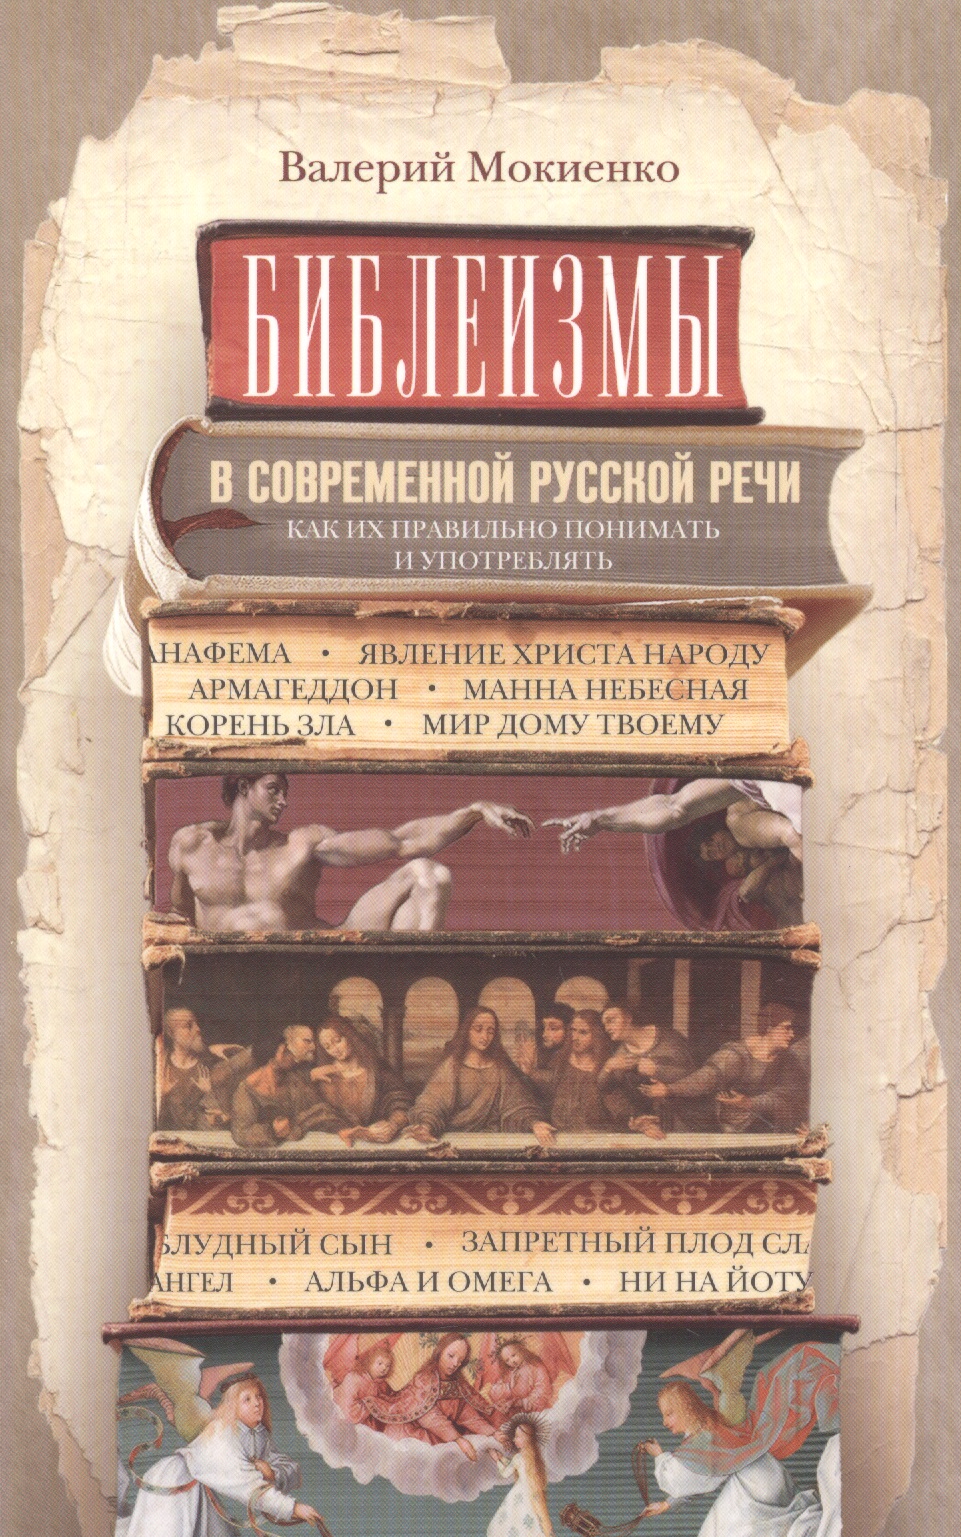 Мокиенко Валерий Михайлович Библеизмы в современной русской речи. Как их правильно понимать и употреблять